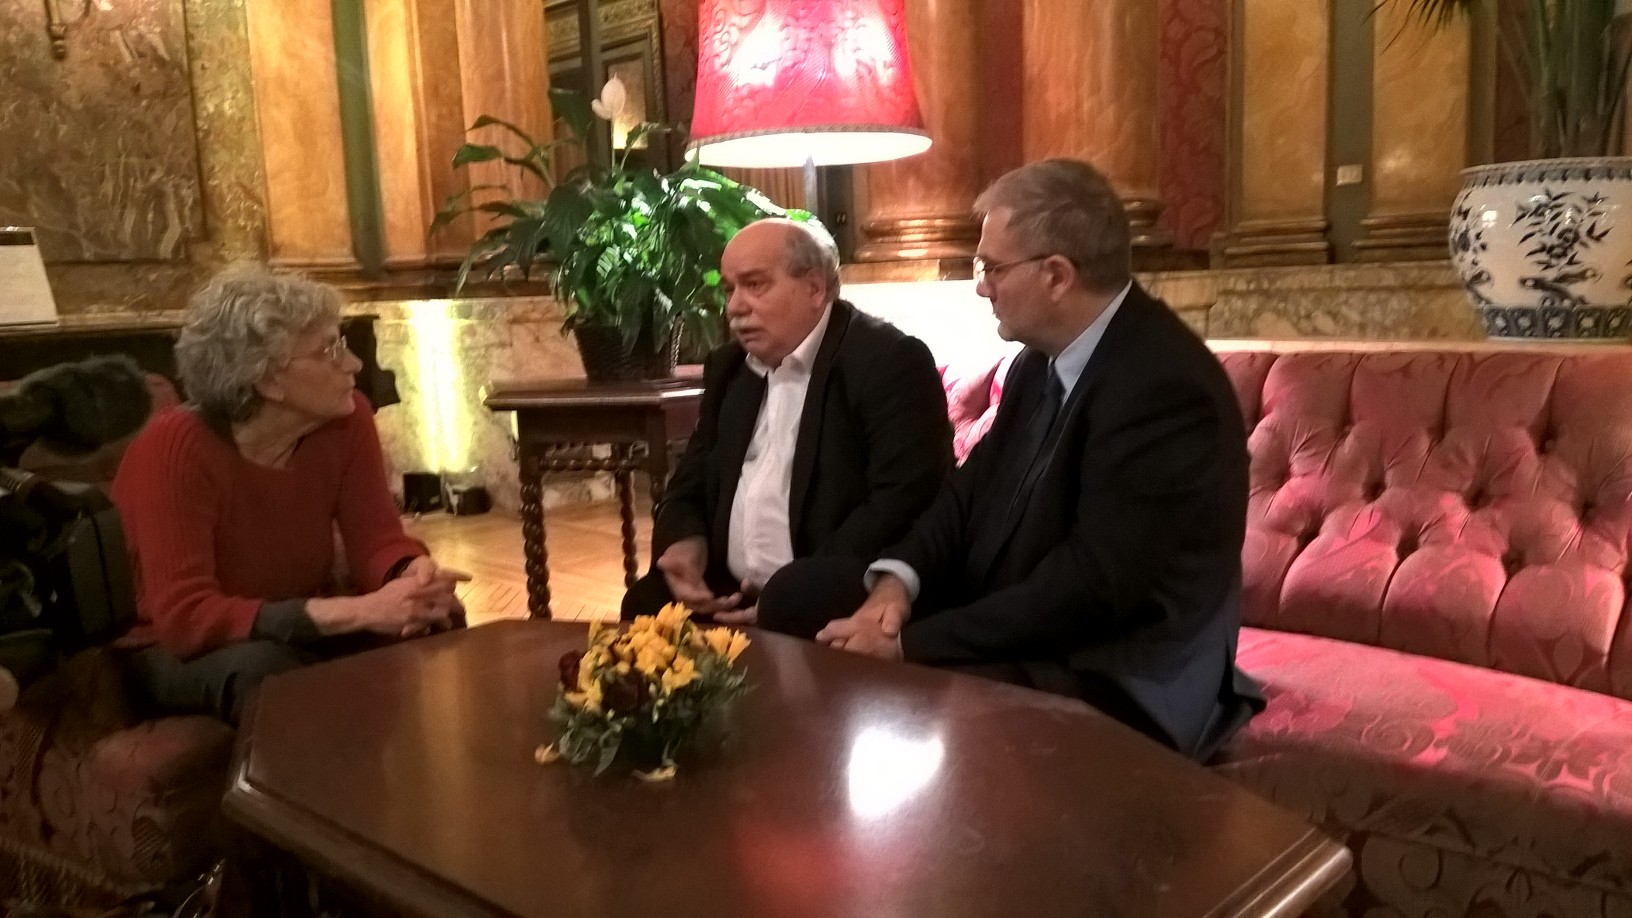 Συνάντηση του Προέδρου της Βουλής, Νίκου Βούτση, με την Τσελέστε Ινγκράο, κόρη του Πιέτρο Ινγκράο, ιστορικού στελέχους της Αριστεράς στην Ιταλία